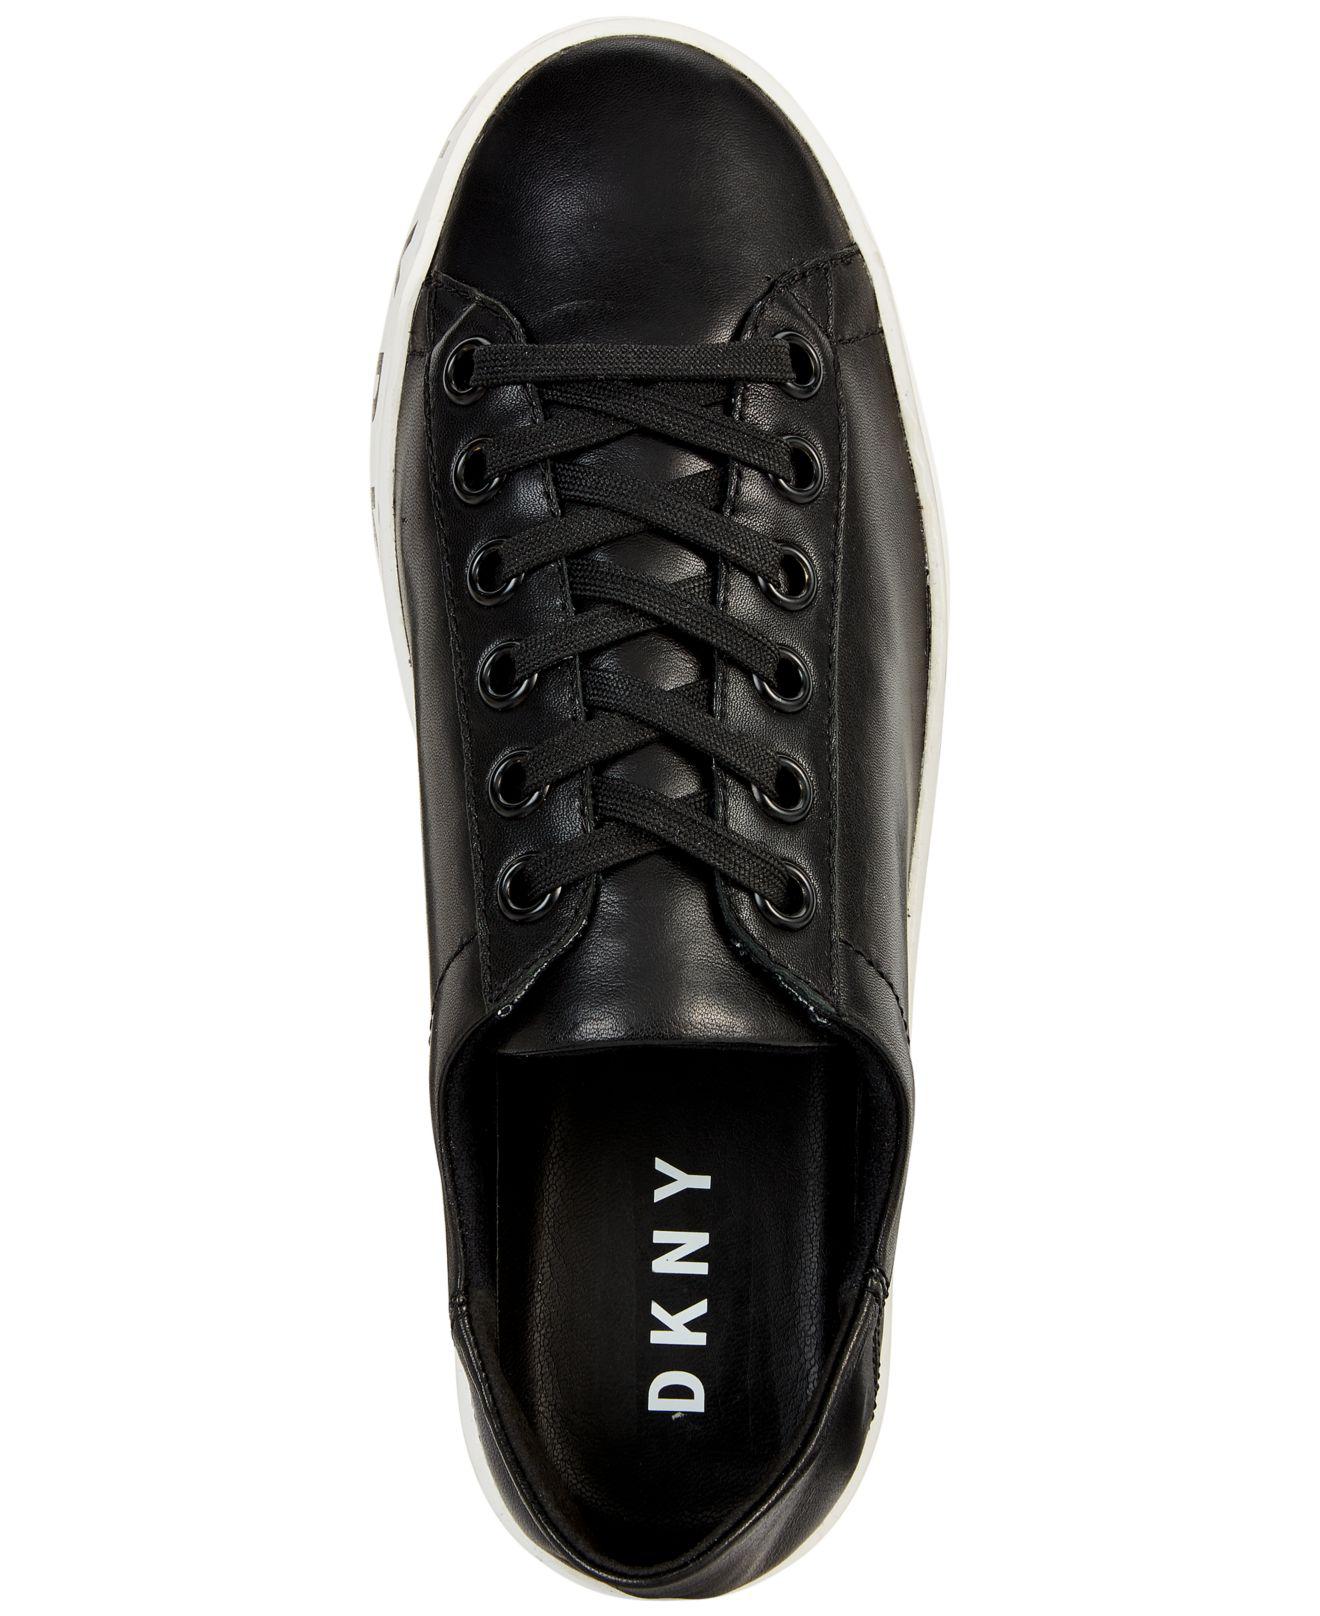 DKNY Banson Leather Sneaker in Black - Lyst